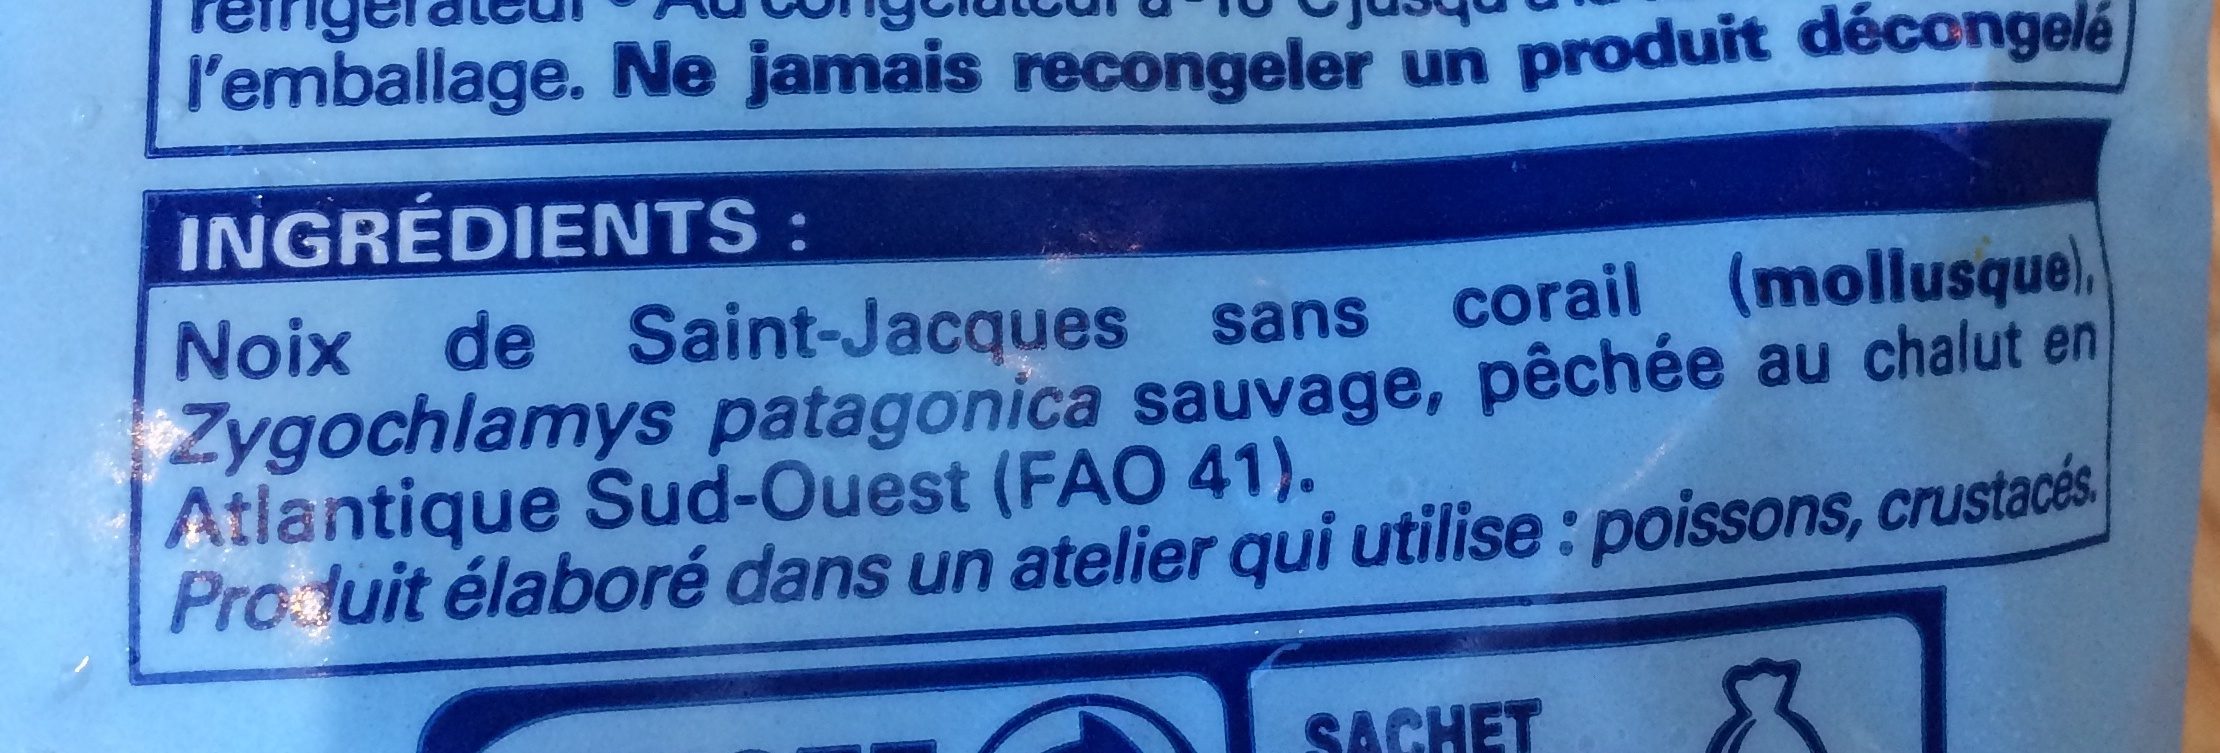 Noix de saint jacques - Ingredients - fr